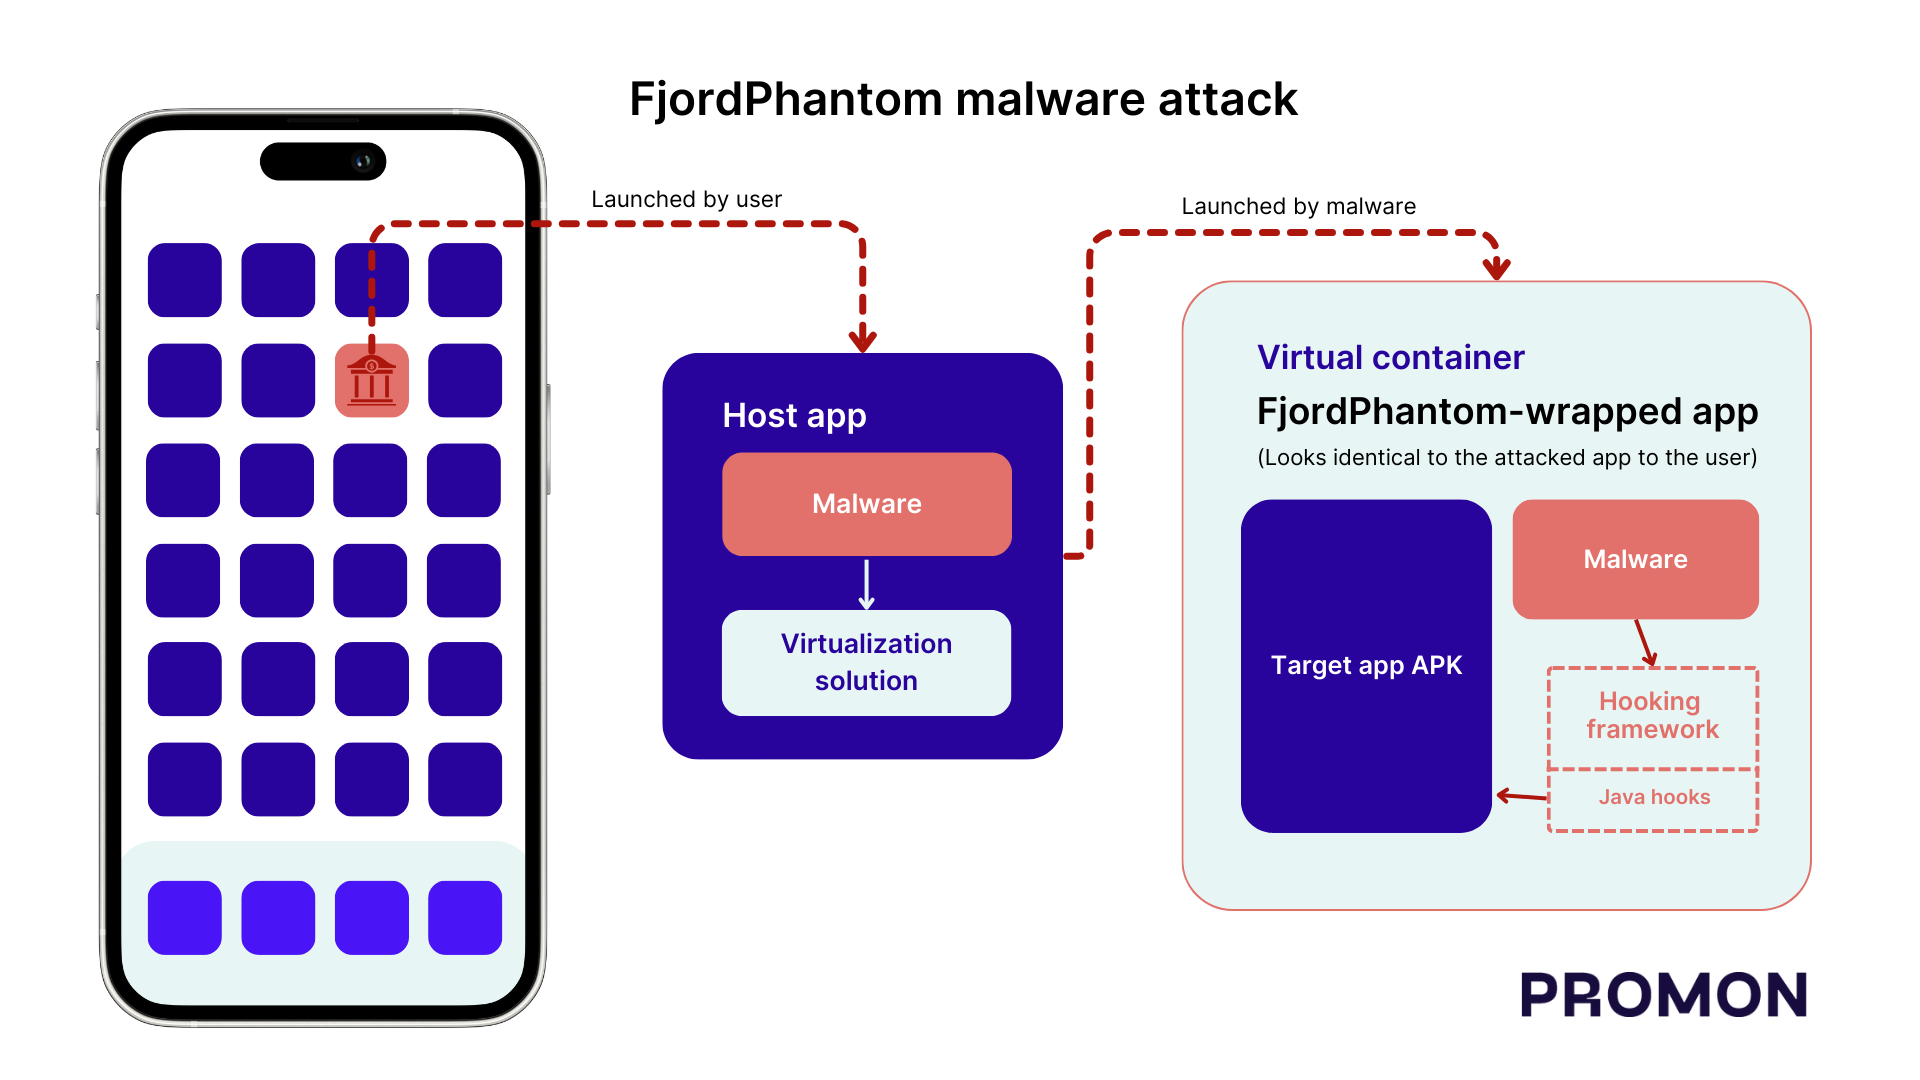 How a FjordPhantom malware attack works